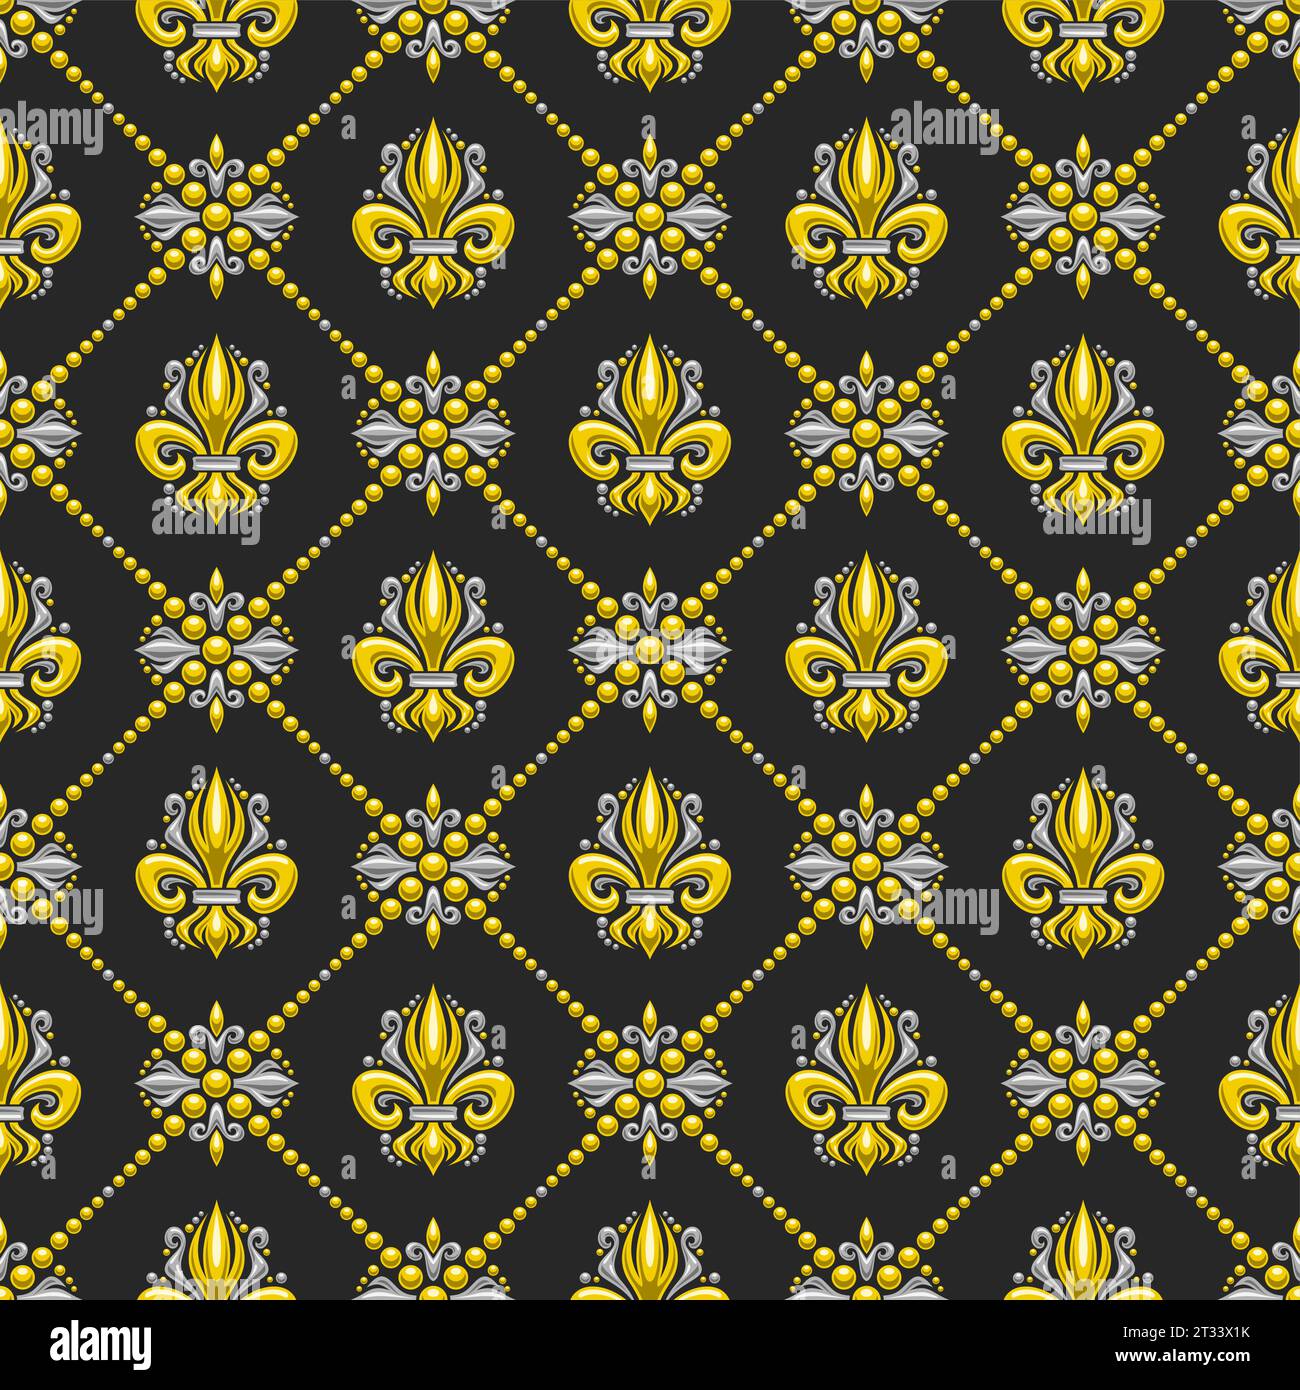 Vector Fleur de Lis Seamless Pattern, quadratischer, wiederholter Hintergrund mit Abbildungen von Gittermustern und gelben französischen Fleur de Lis in Rautenzellen o Stock Vektor